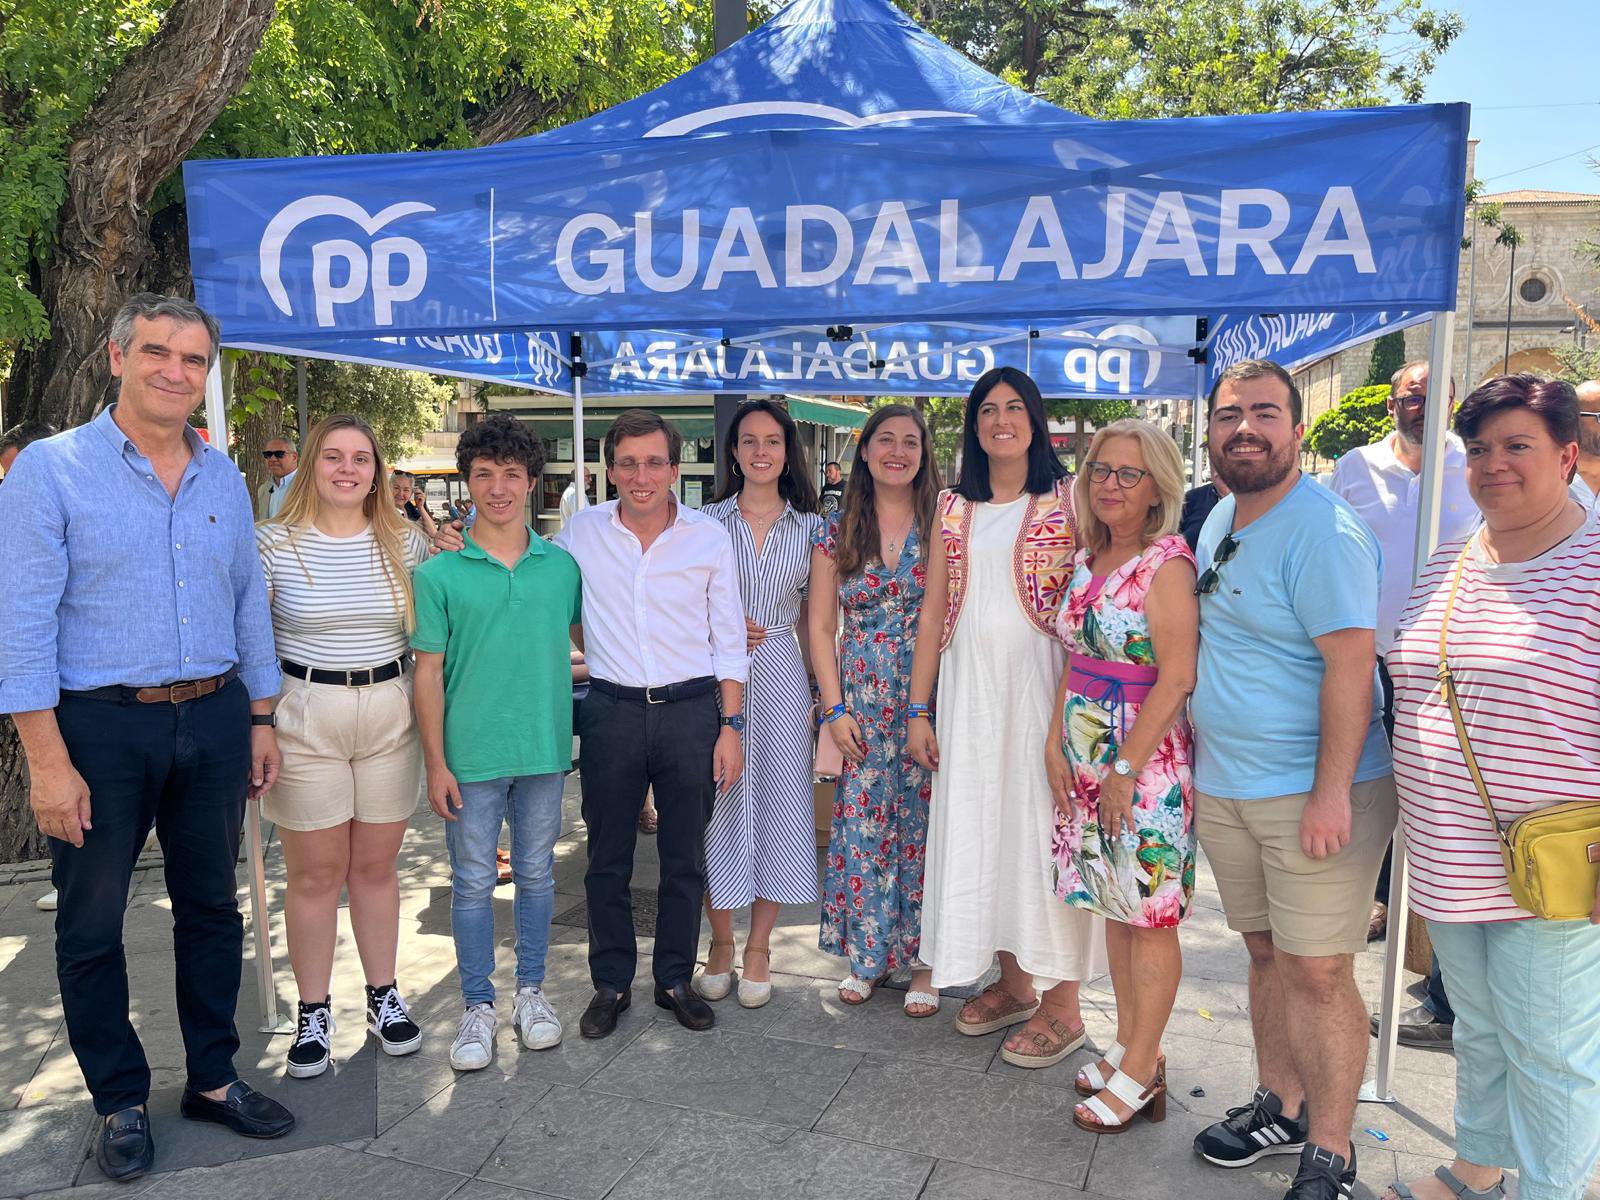 El Alcalde de Madrid visita Guadalajara para impulsar el voto del PP en la campaña electoral